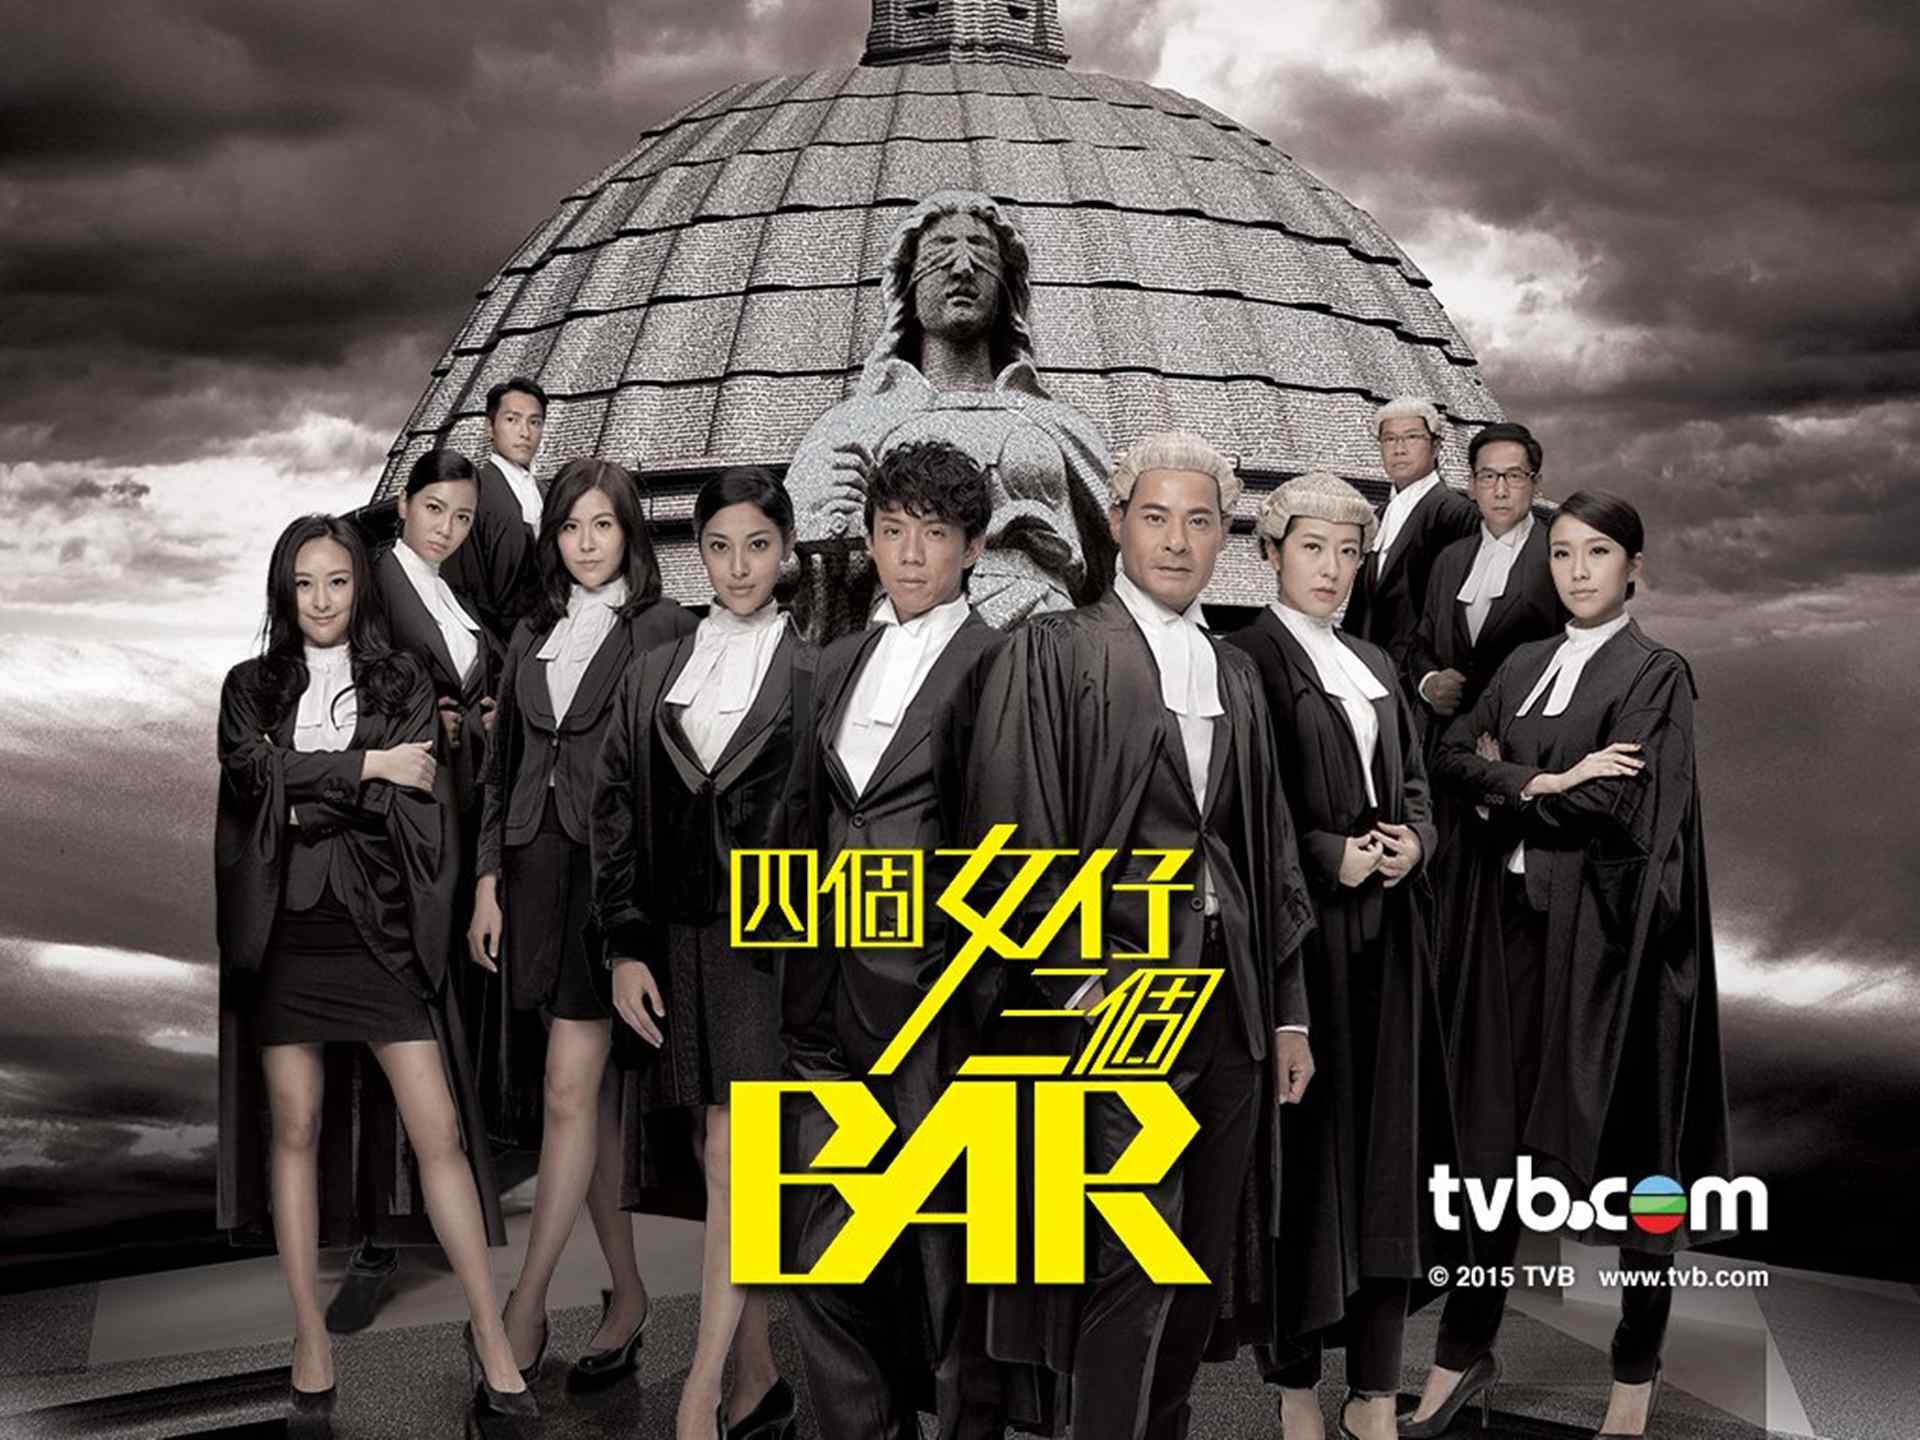 TVB电视四个女仔三个Bar海报桌面壁纸下载